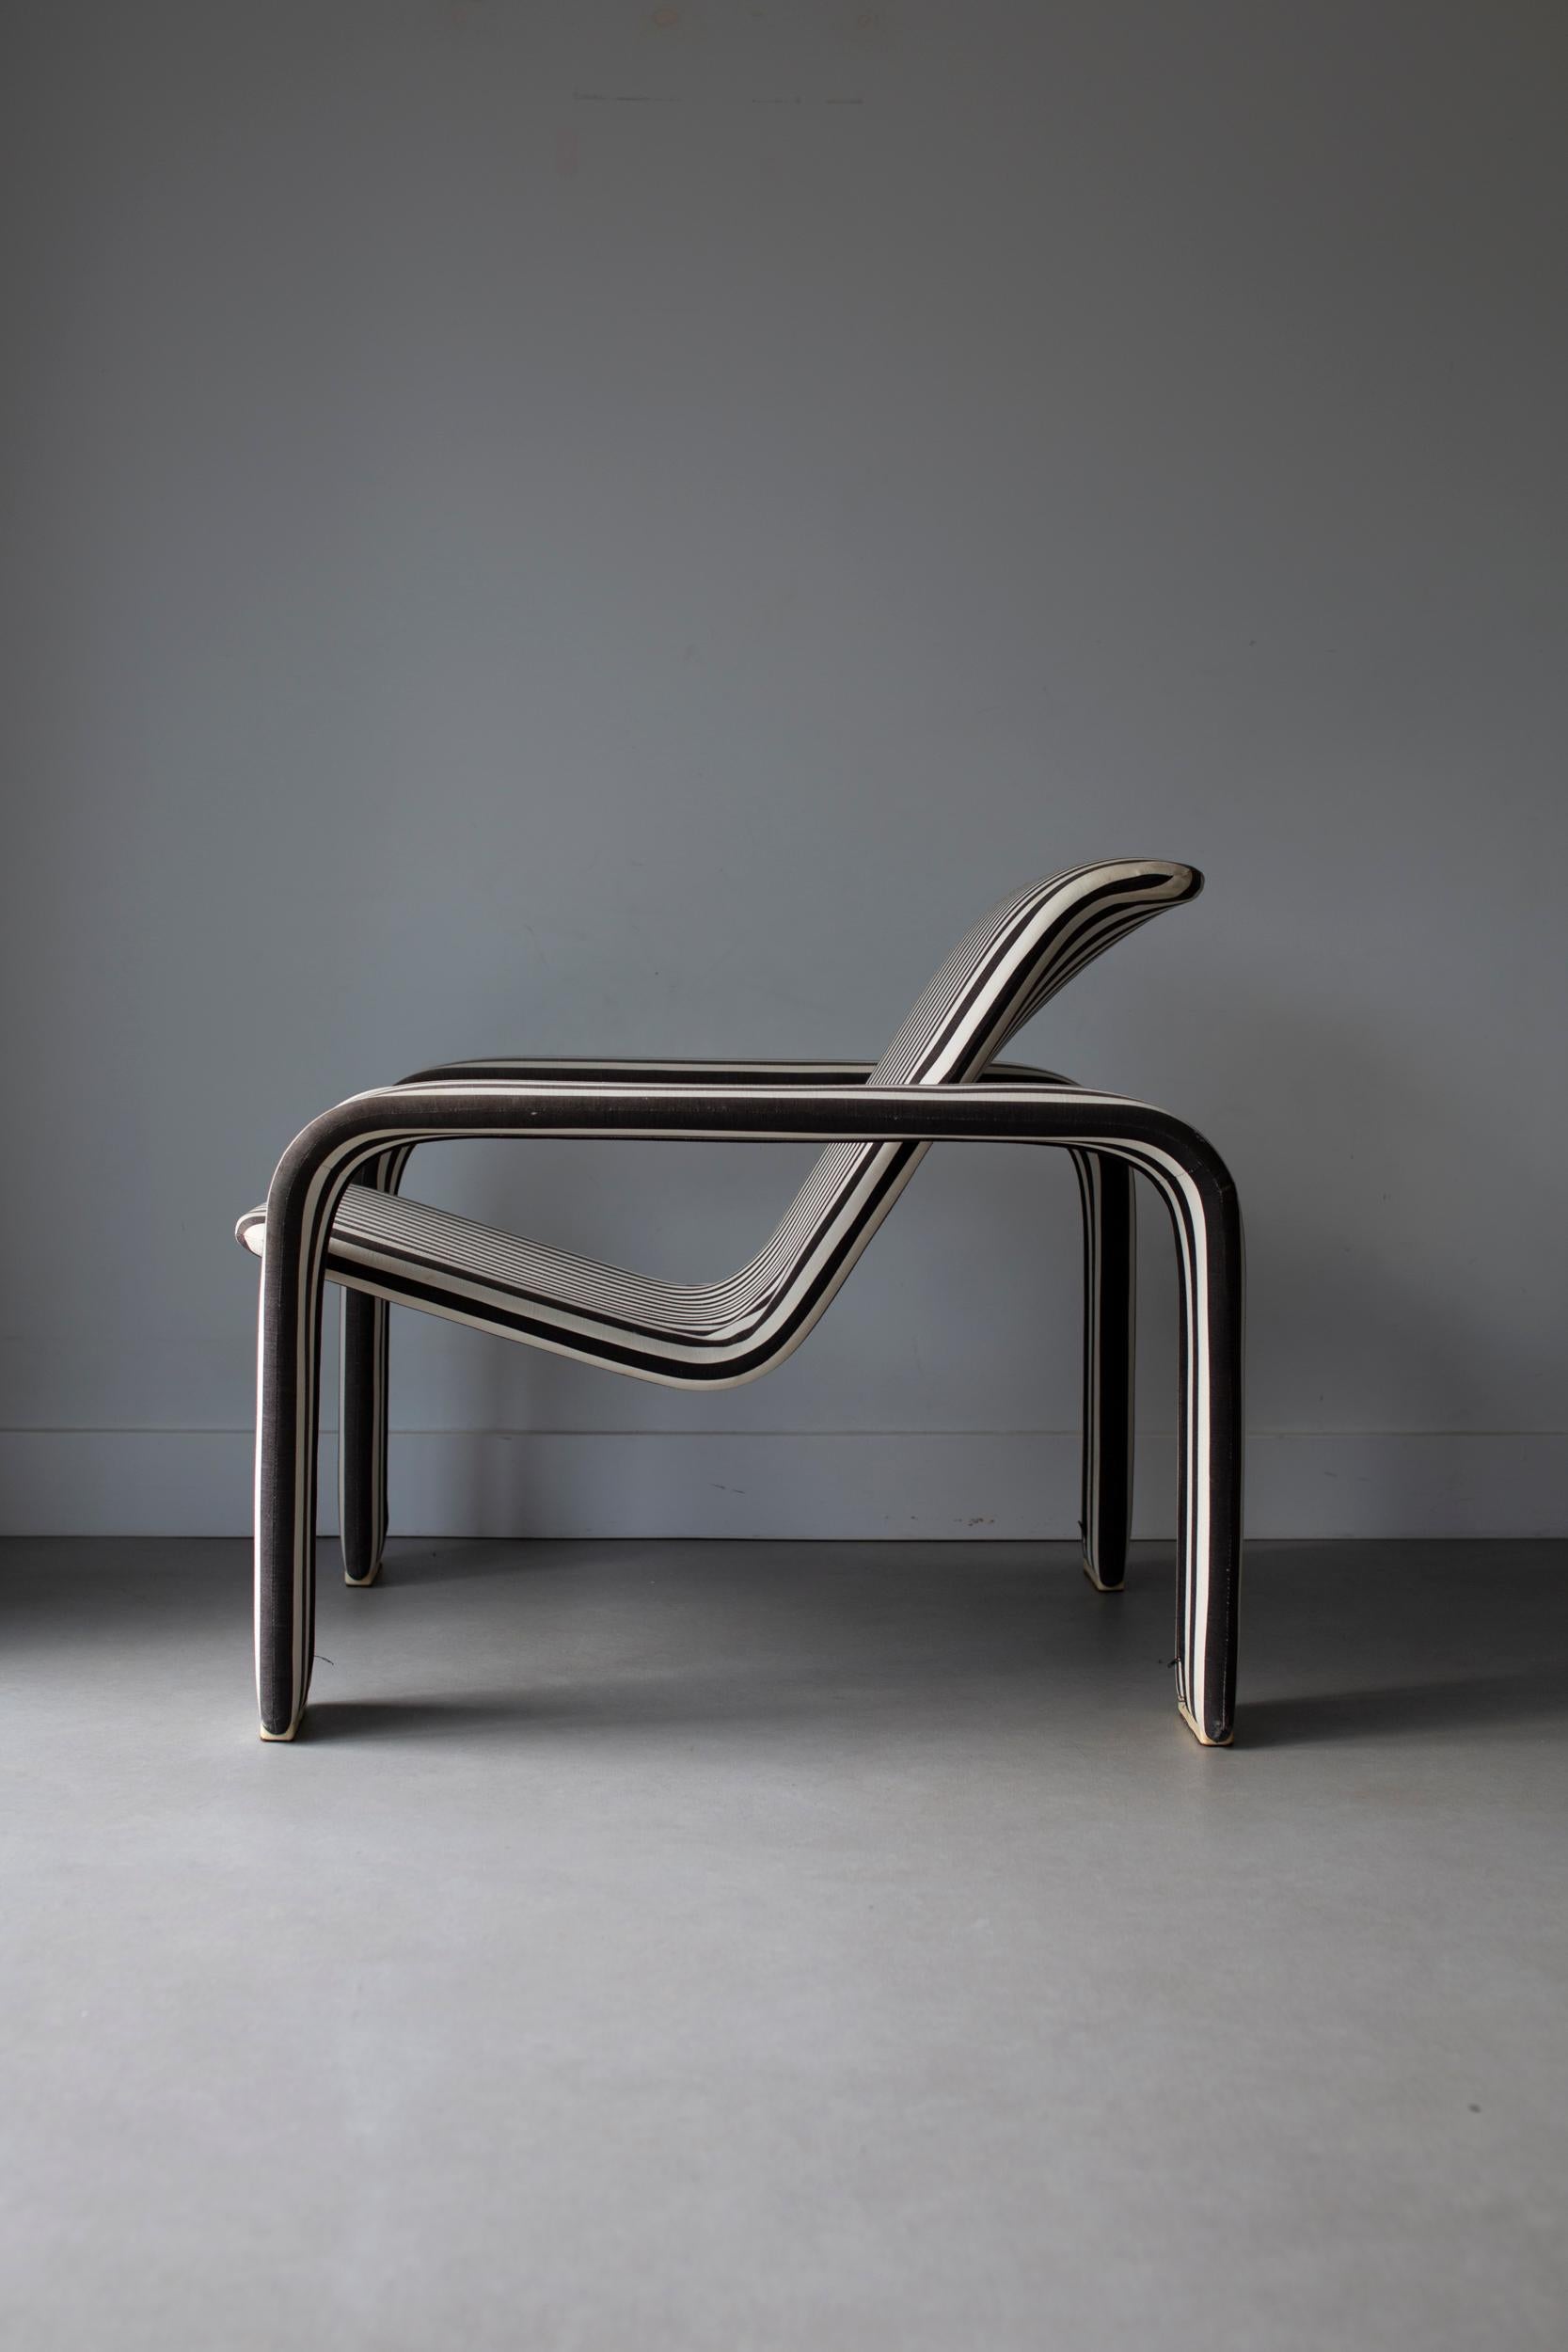 Conçu par le designer finlandais Antti Nurmesniemi, le fauteuil 004 respire le style et le confort du milieu du siècle. Fabriqué pour Vuokko 80's, ce fauteuil bénéficie d'un design intemporel et d'une fabrication de qualité. Ses lignes douces en